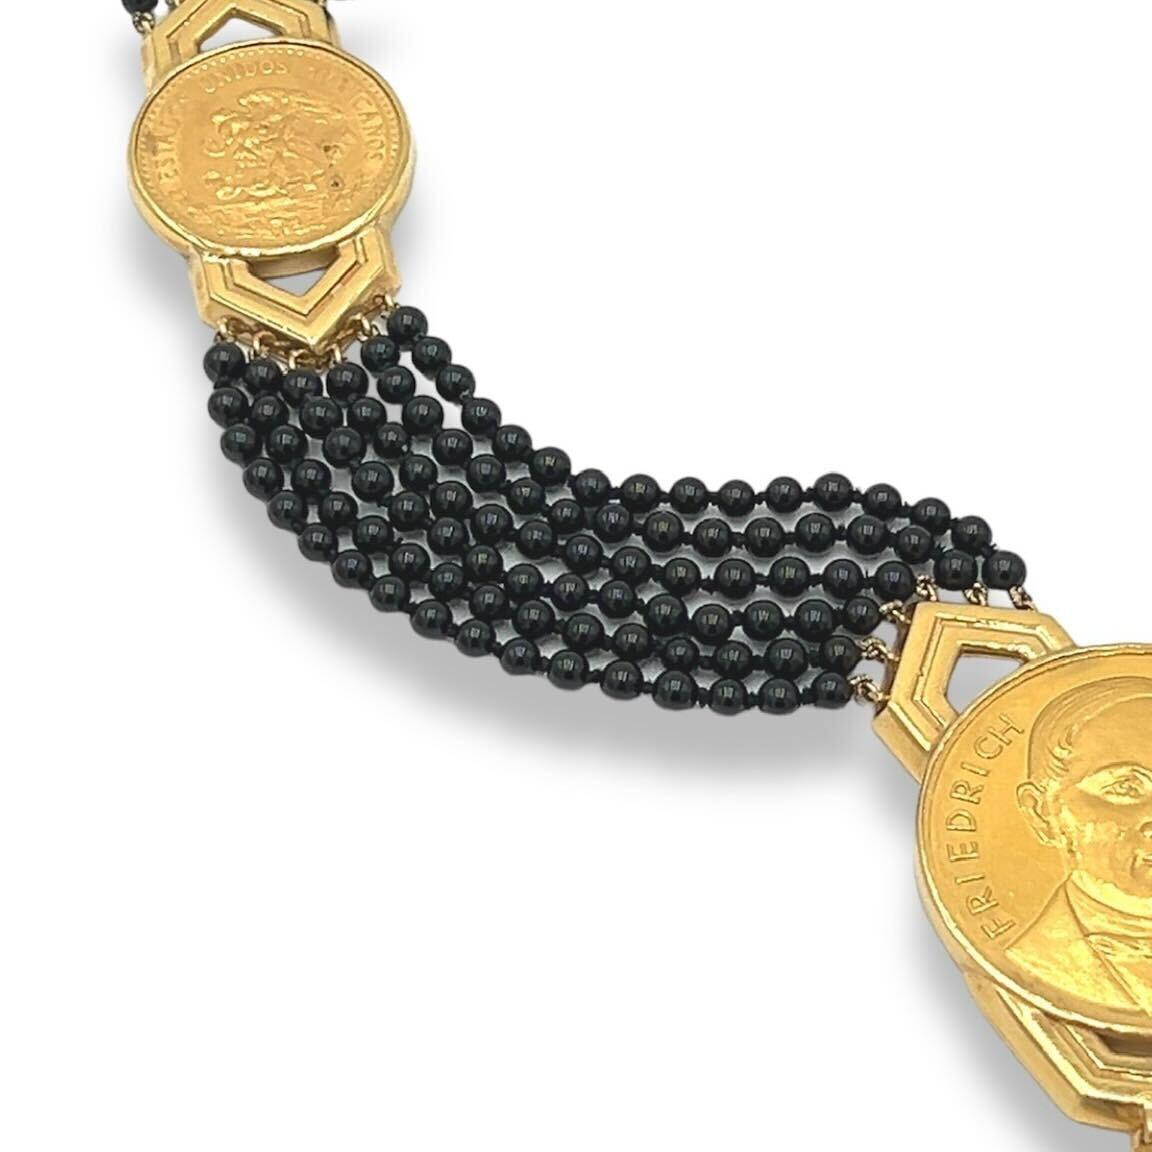 Halskette aus 18-karätigem Gelbgold und hochkarätigem Gold, schwarzem Onyx und Diamanten, Emis Beros, um 1970er Jahre.  Die Kette besteht aus sechs (6) Strängen schwarzer Onyxperlen, die mit sechs (6) abgestuften Goldmünzen verschiedener Nationen in